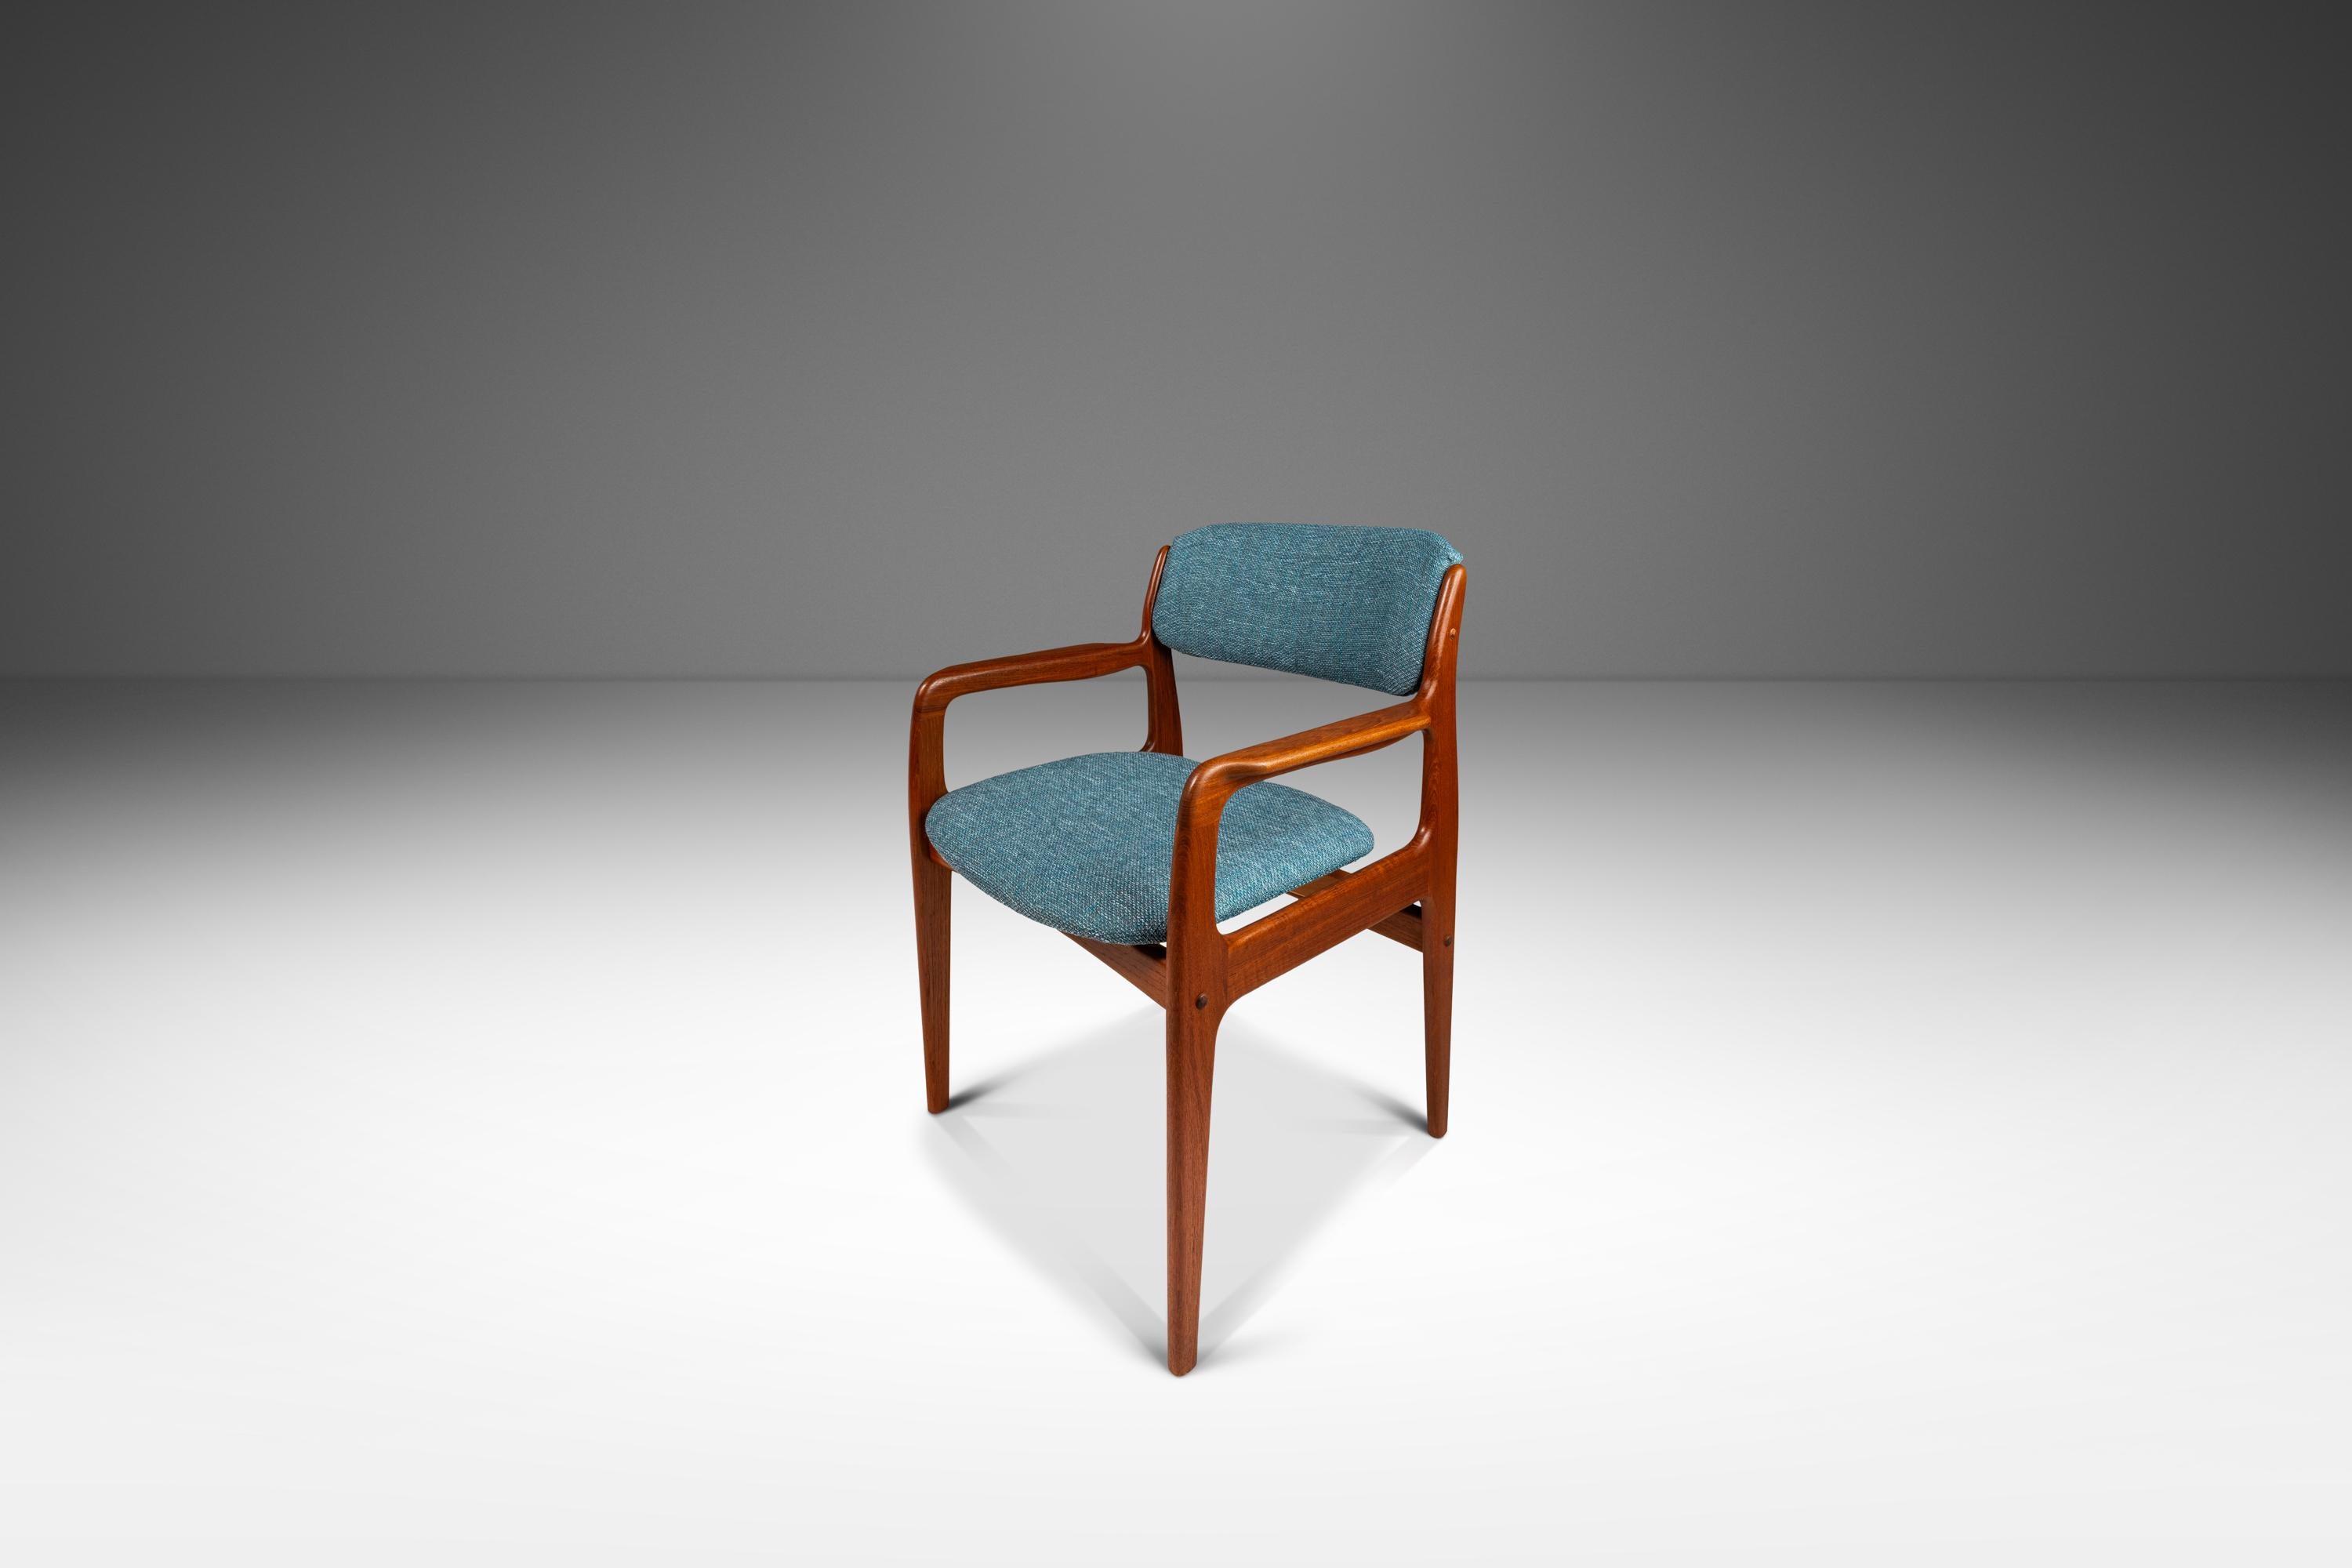 Voici un fauteuil moderne danois récemment restauré, conçu par l'influent Benny Linden. Construit à partir d'une structure en teck massif de Birmanie avec des veinures exceptionnelles de bois ancien et doté d'un nouveau rembourrage bleu ciel en